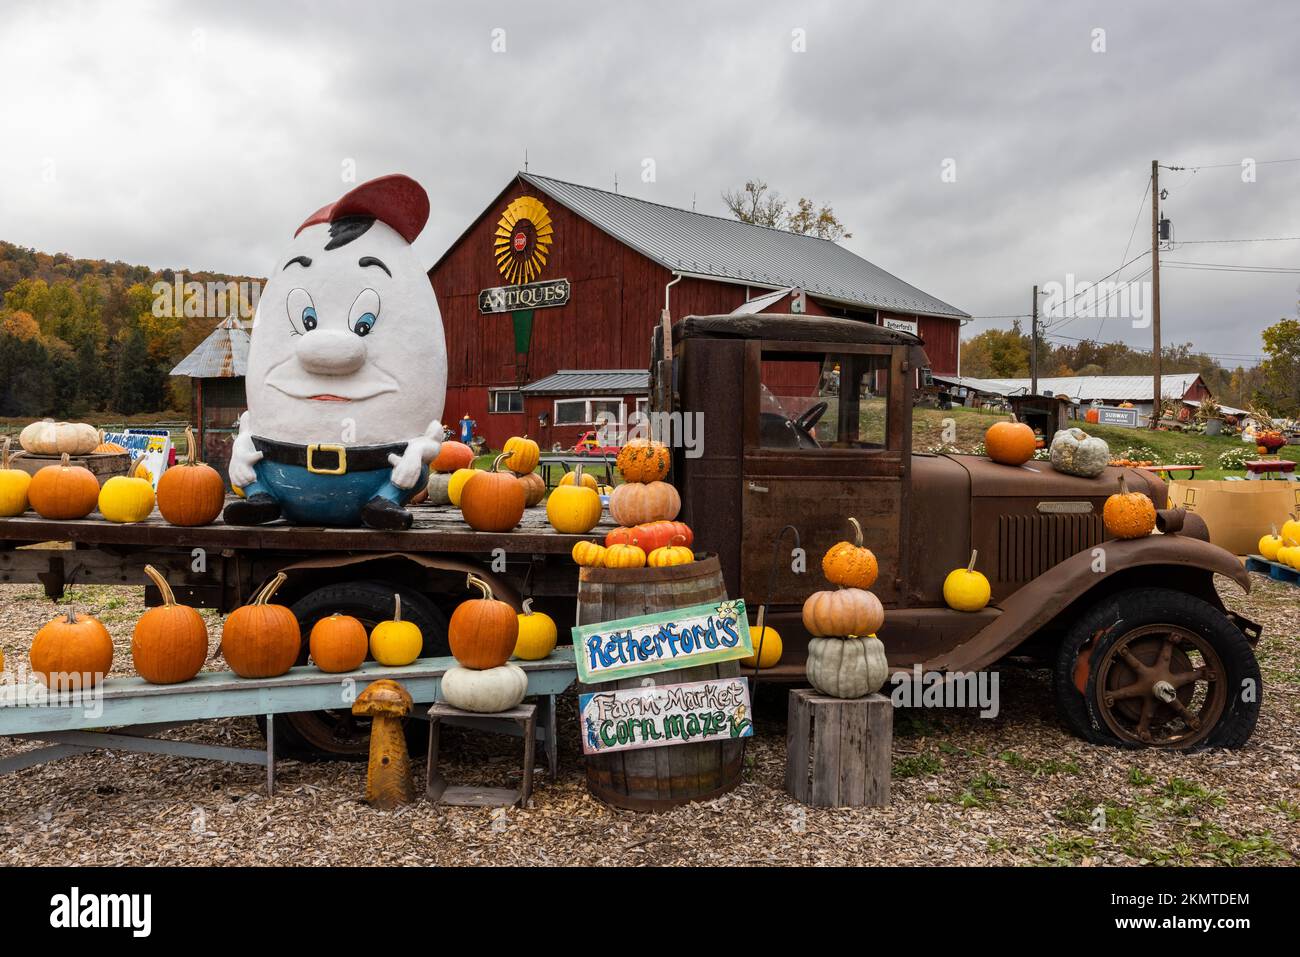 Retherfords Village décoré pour Halloween, Benton, Pennsylvanie Banque D'Images